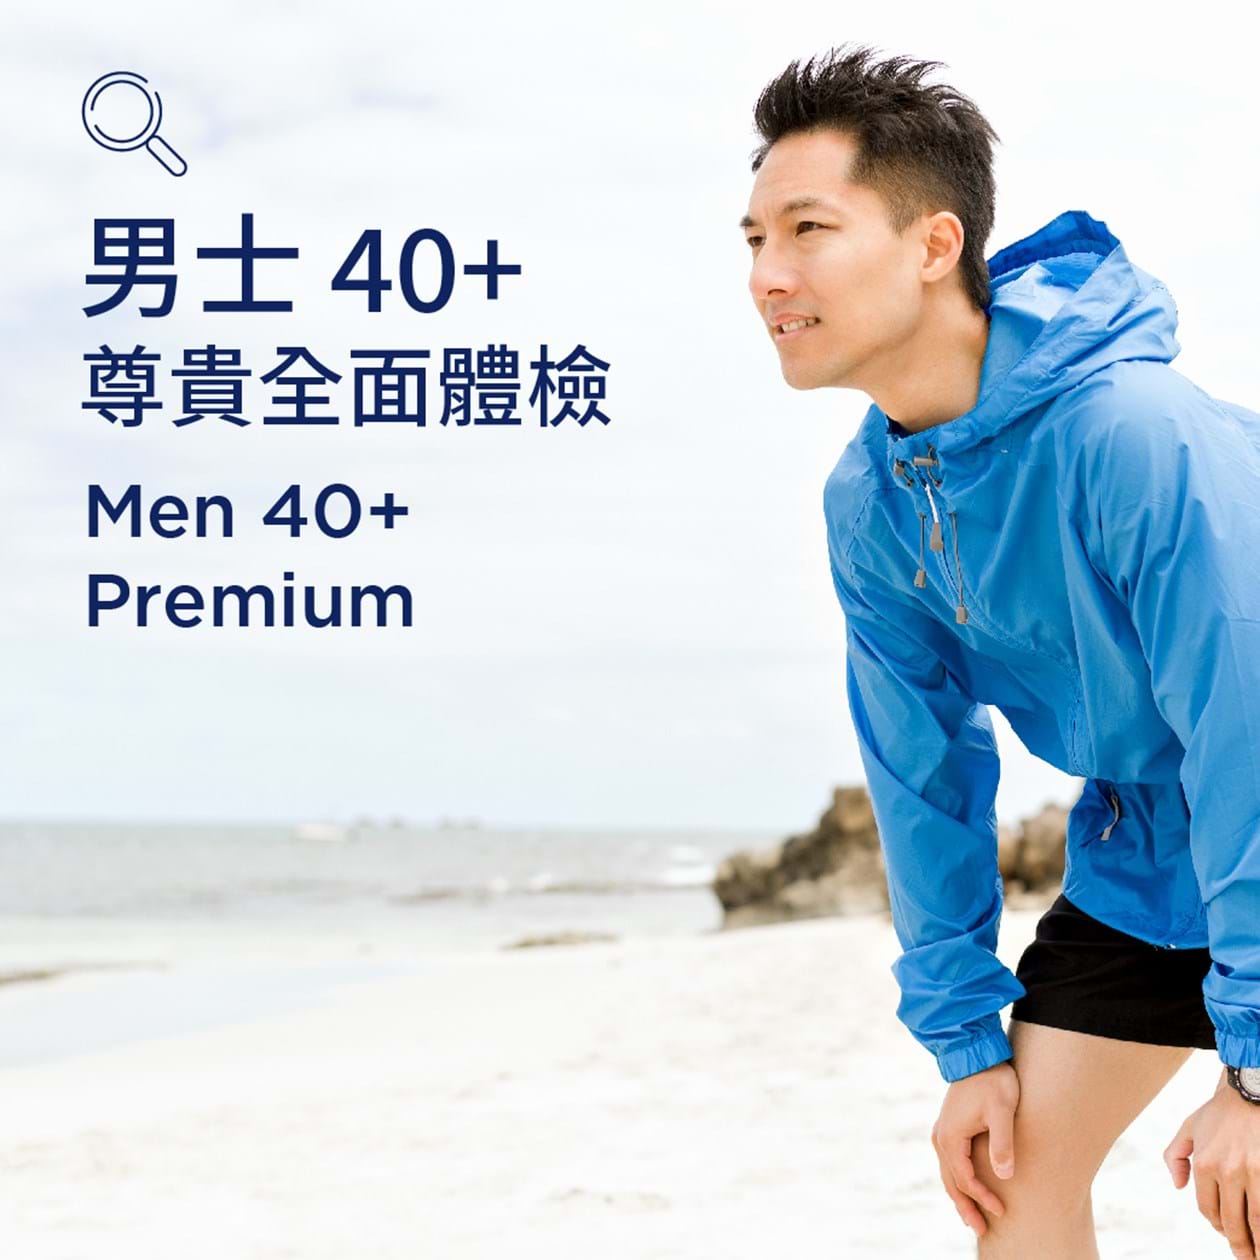 Men 40+ (Premium)